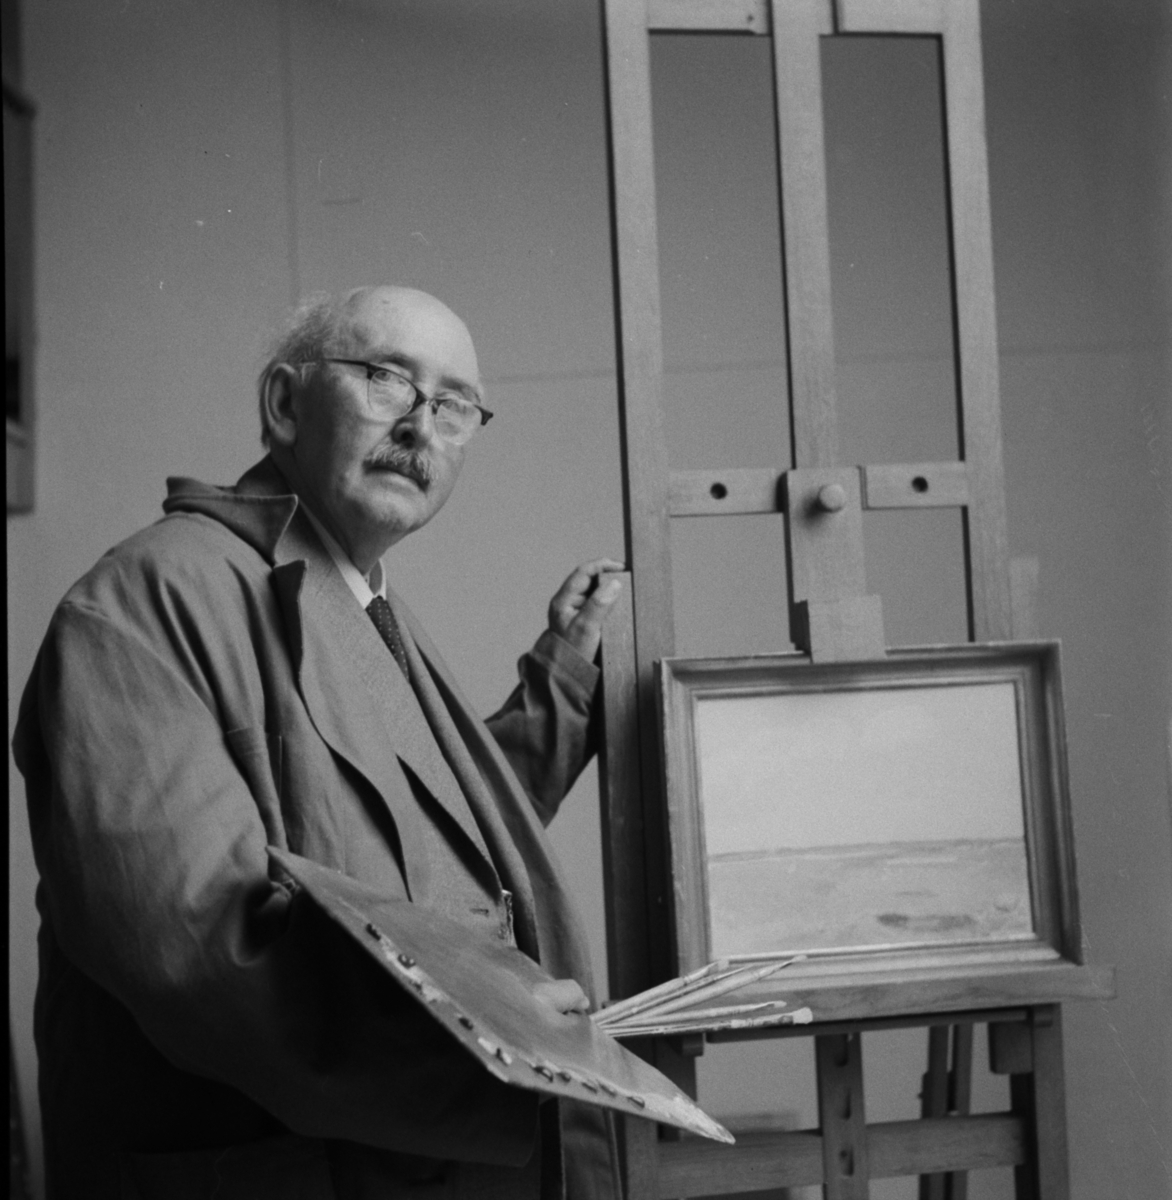 Konstnären William Nording, interiör o exteriör, porträtt